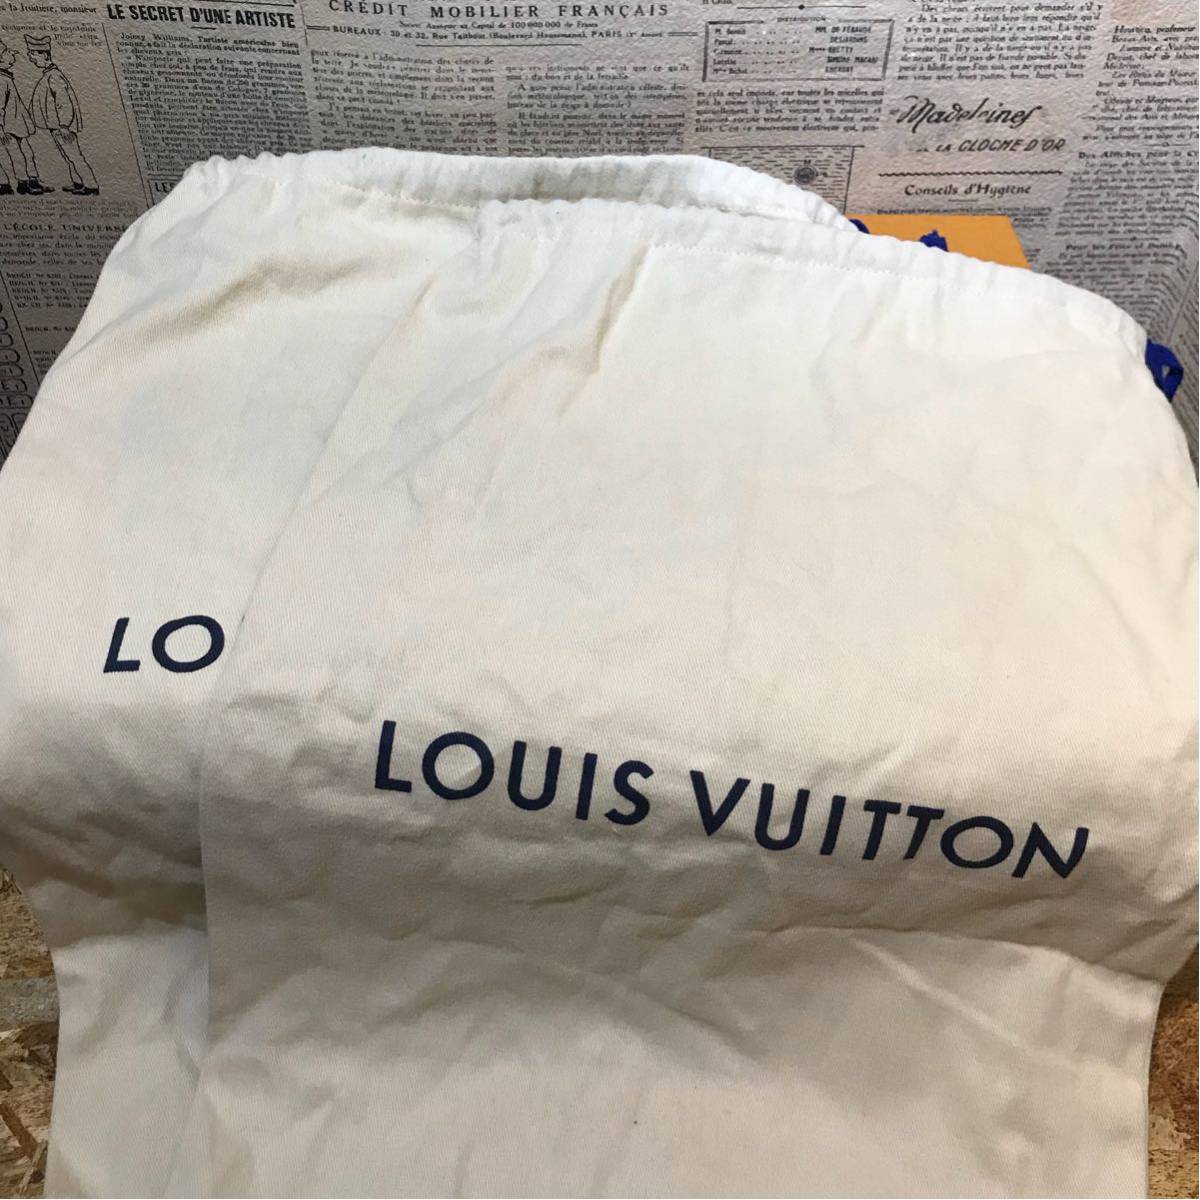 LOUIS VUITTON ルイヴィトン ホノルル・ライン ミュール サイズ6 2018SS サンダル 完売品_画像8